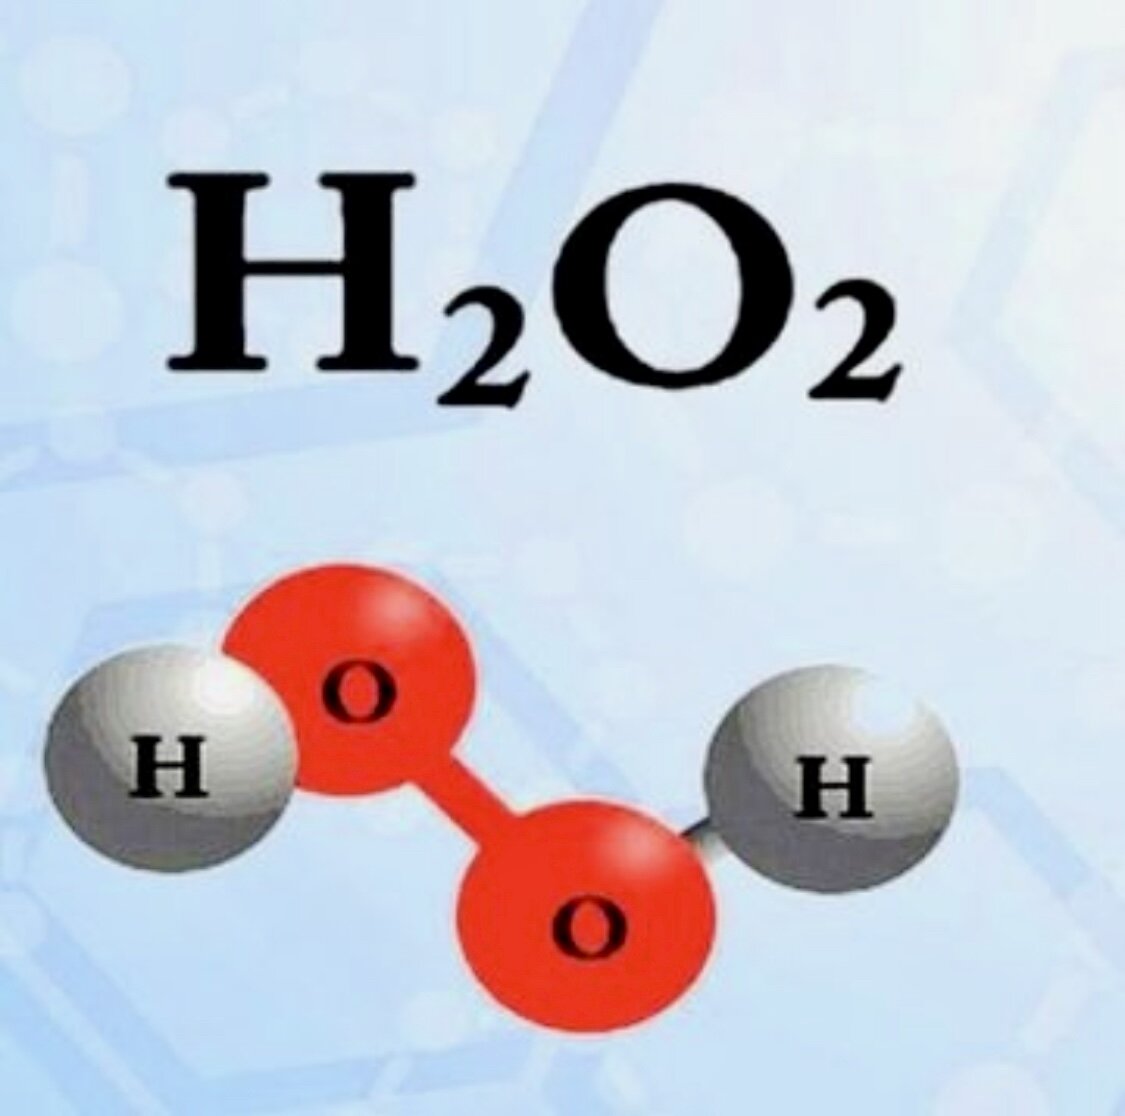 Можно водород формула